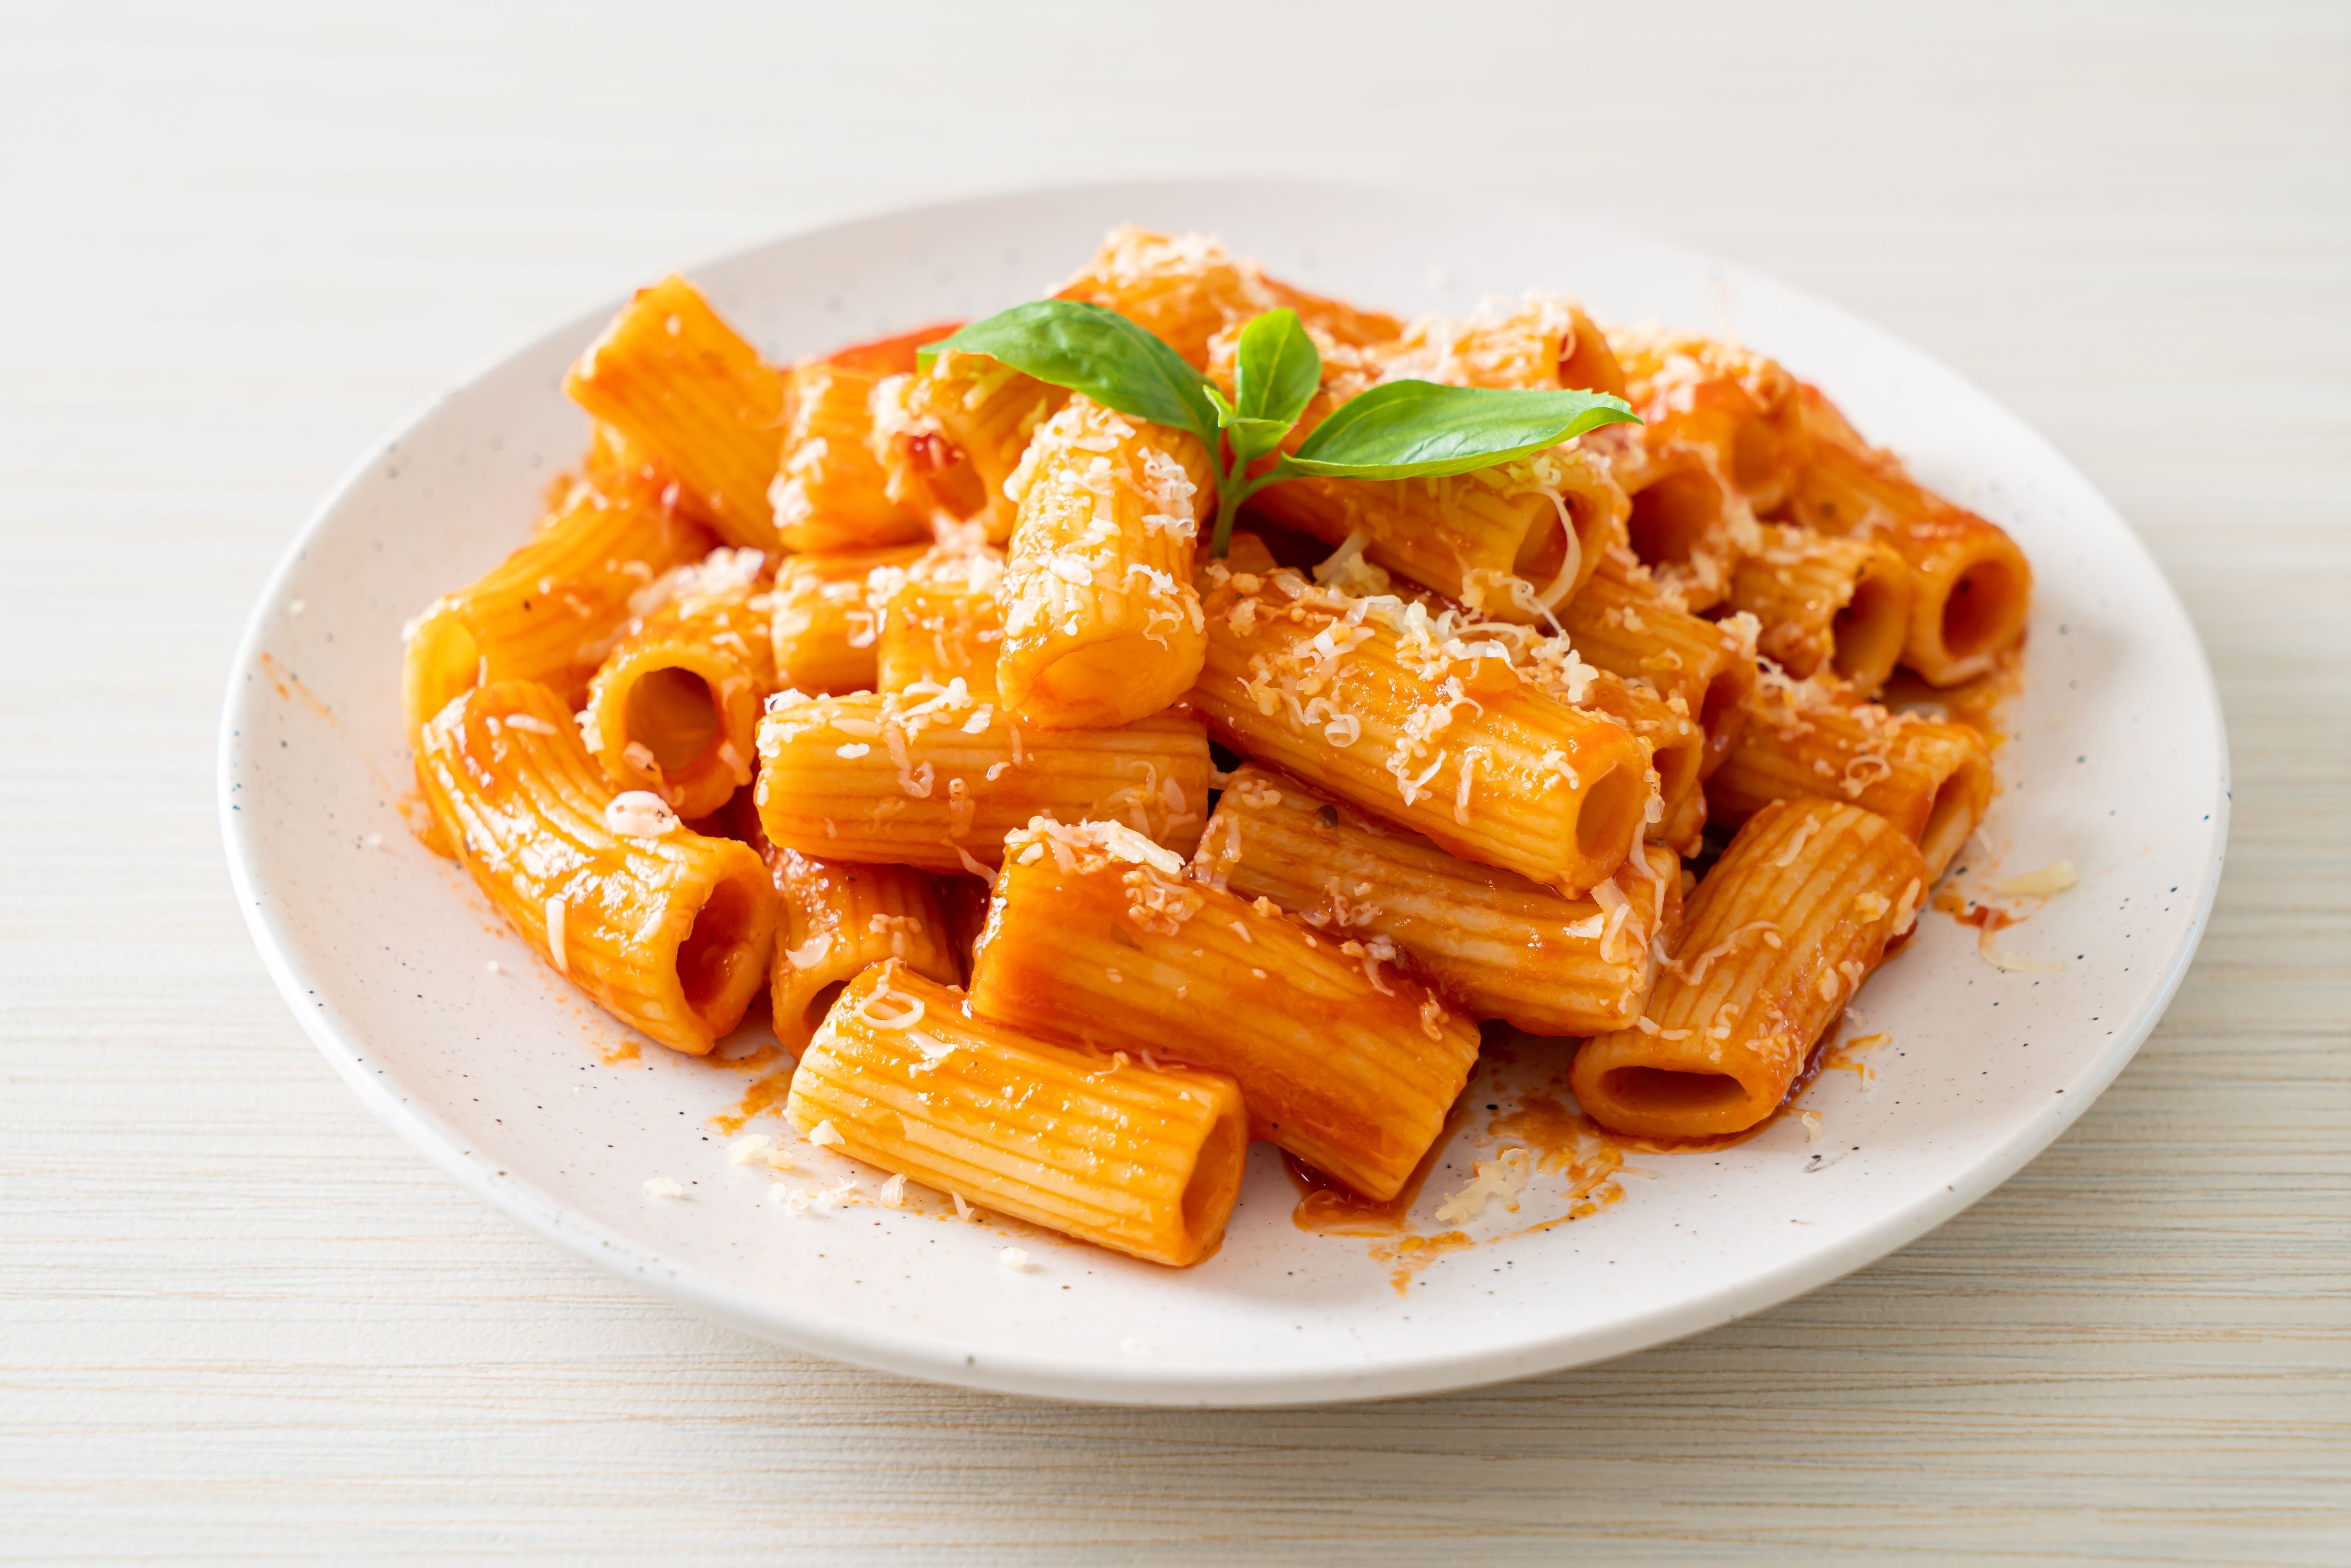 Rigatoni Armando pasta with cheese and tomato sauce